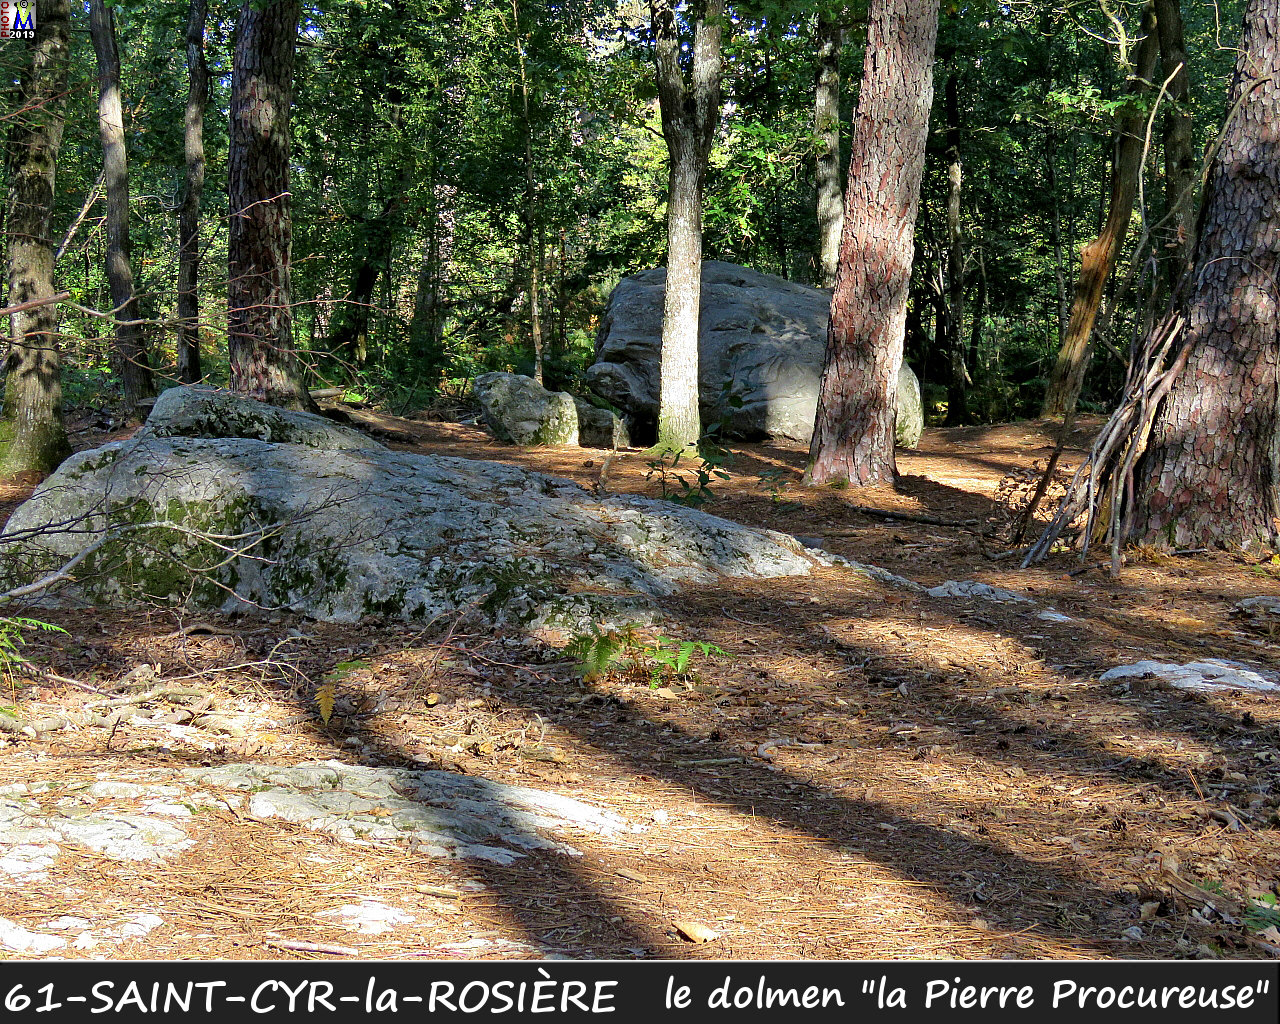 61StCYR-la-ROSIERE_dolmen_104.jpg